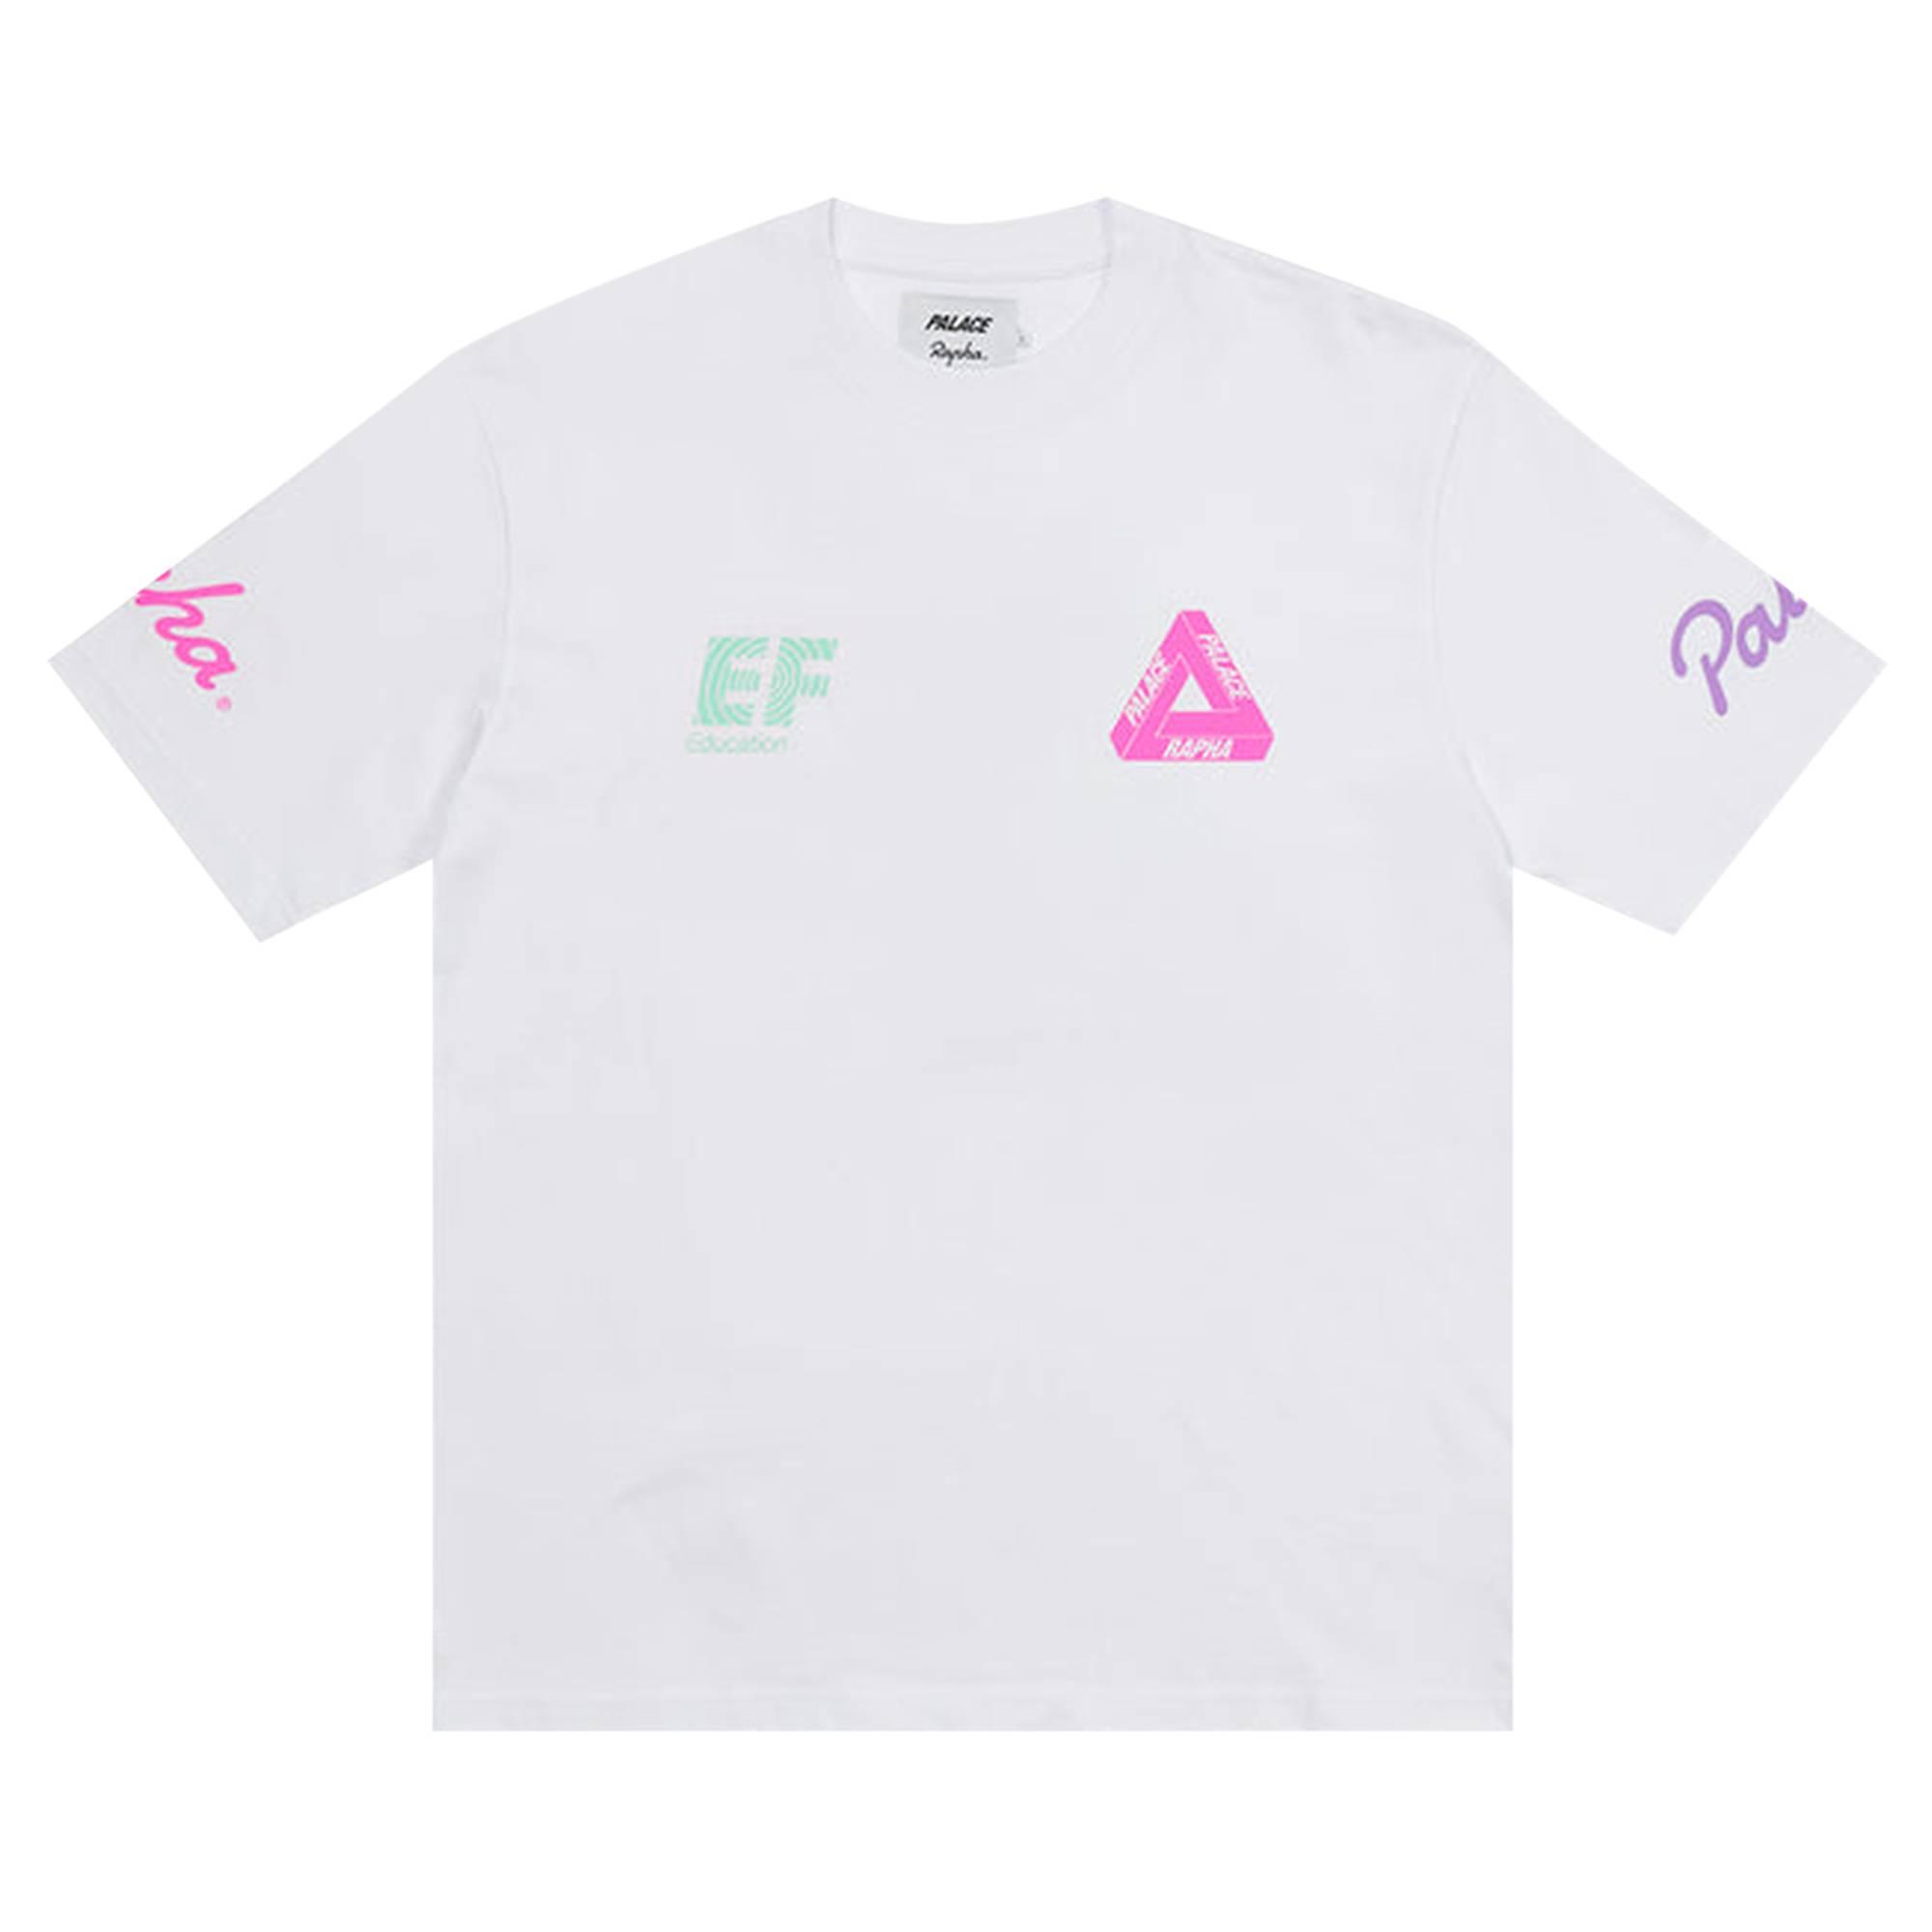 Palace x Rapha EF Education T-shirt